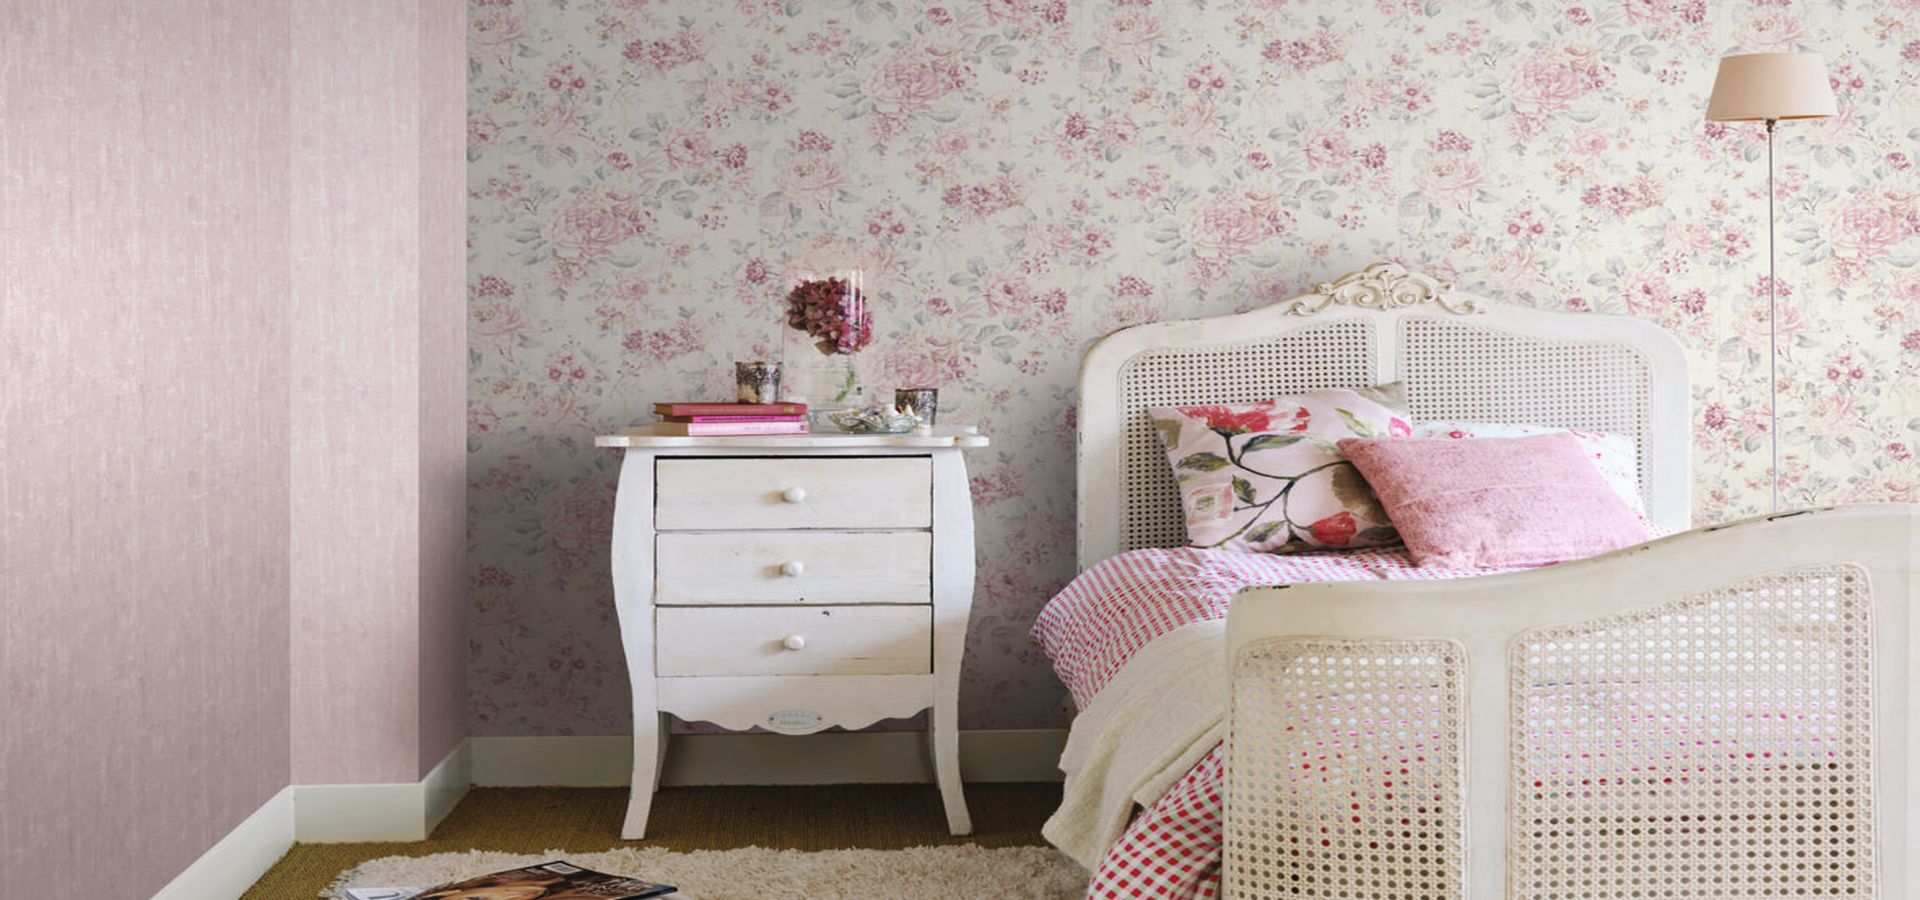 Bild Schlafzimmer romantisch rosa